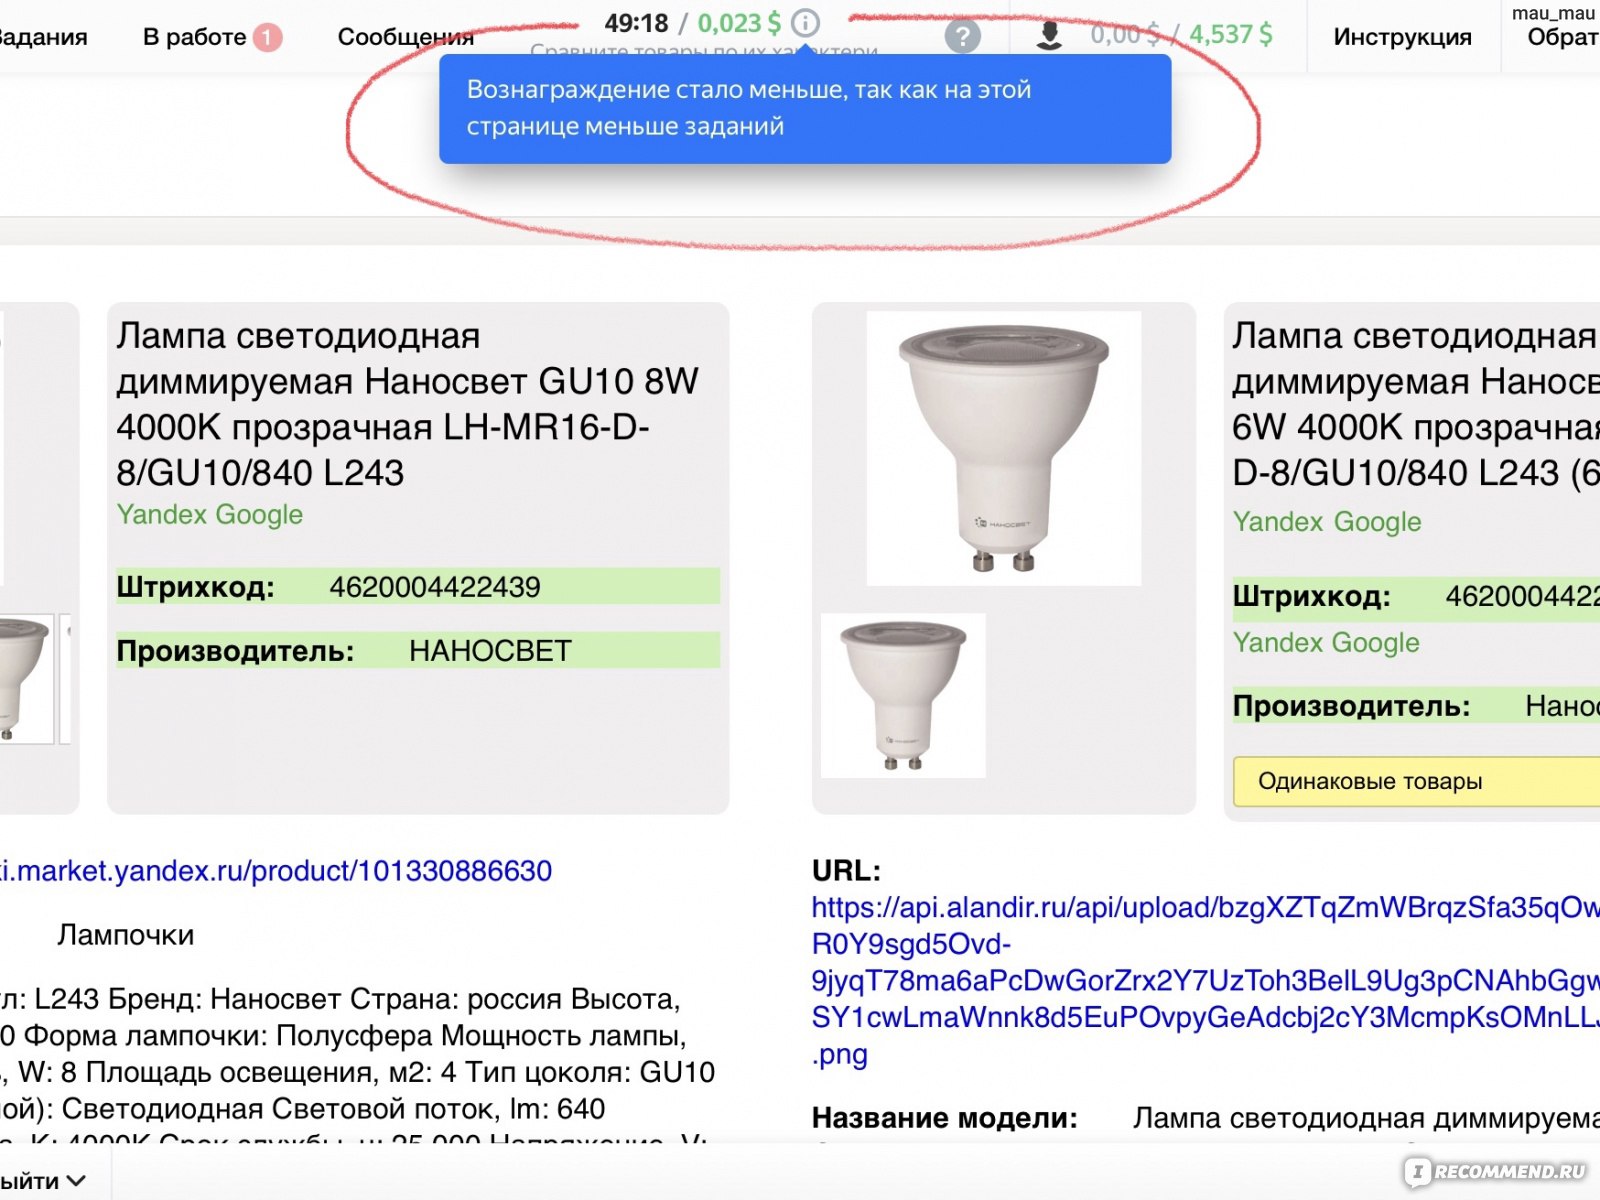 Заработок в телеграмме на русском без вложений с выводом денег карту сбербанка фото 105